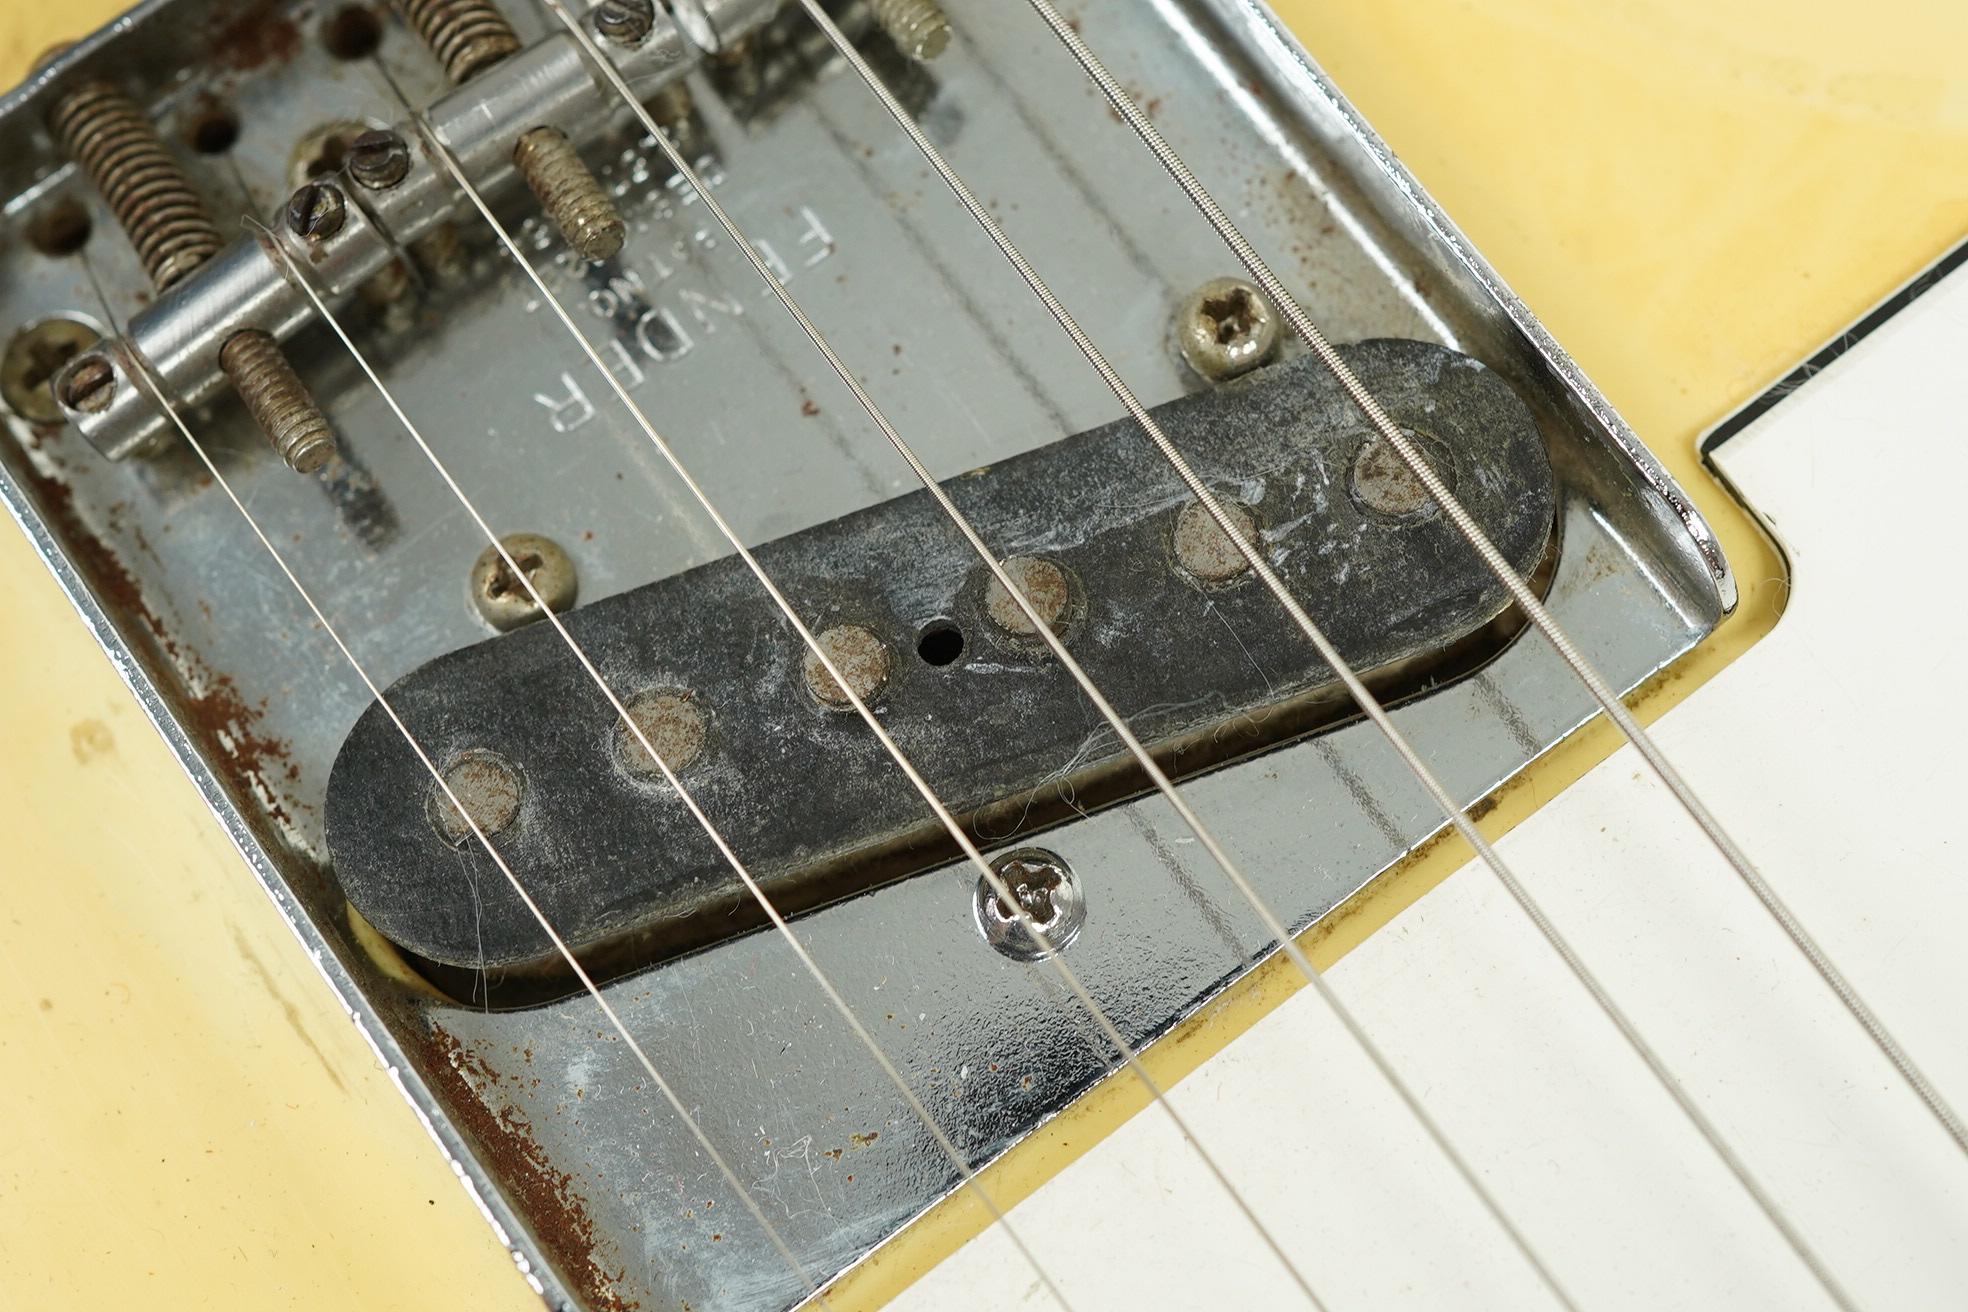 1970 Fender Telecaster